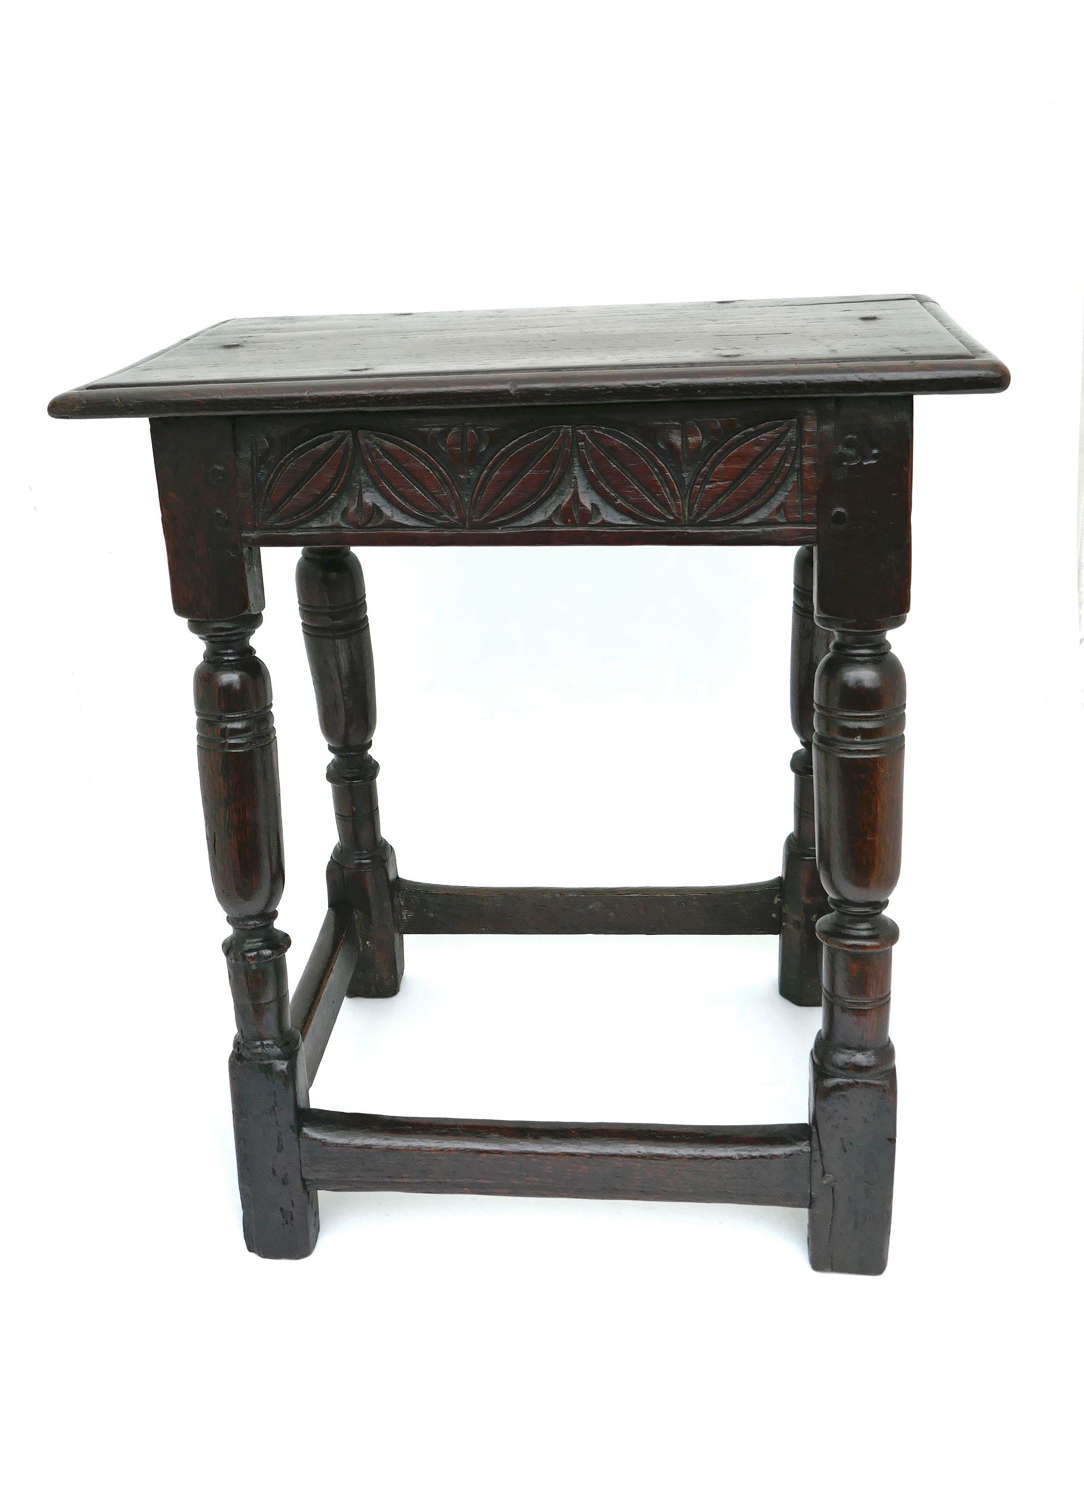 Early Antique Oak Furniture 17thc Joyned Stool . English C1660-80.